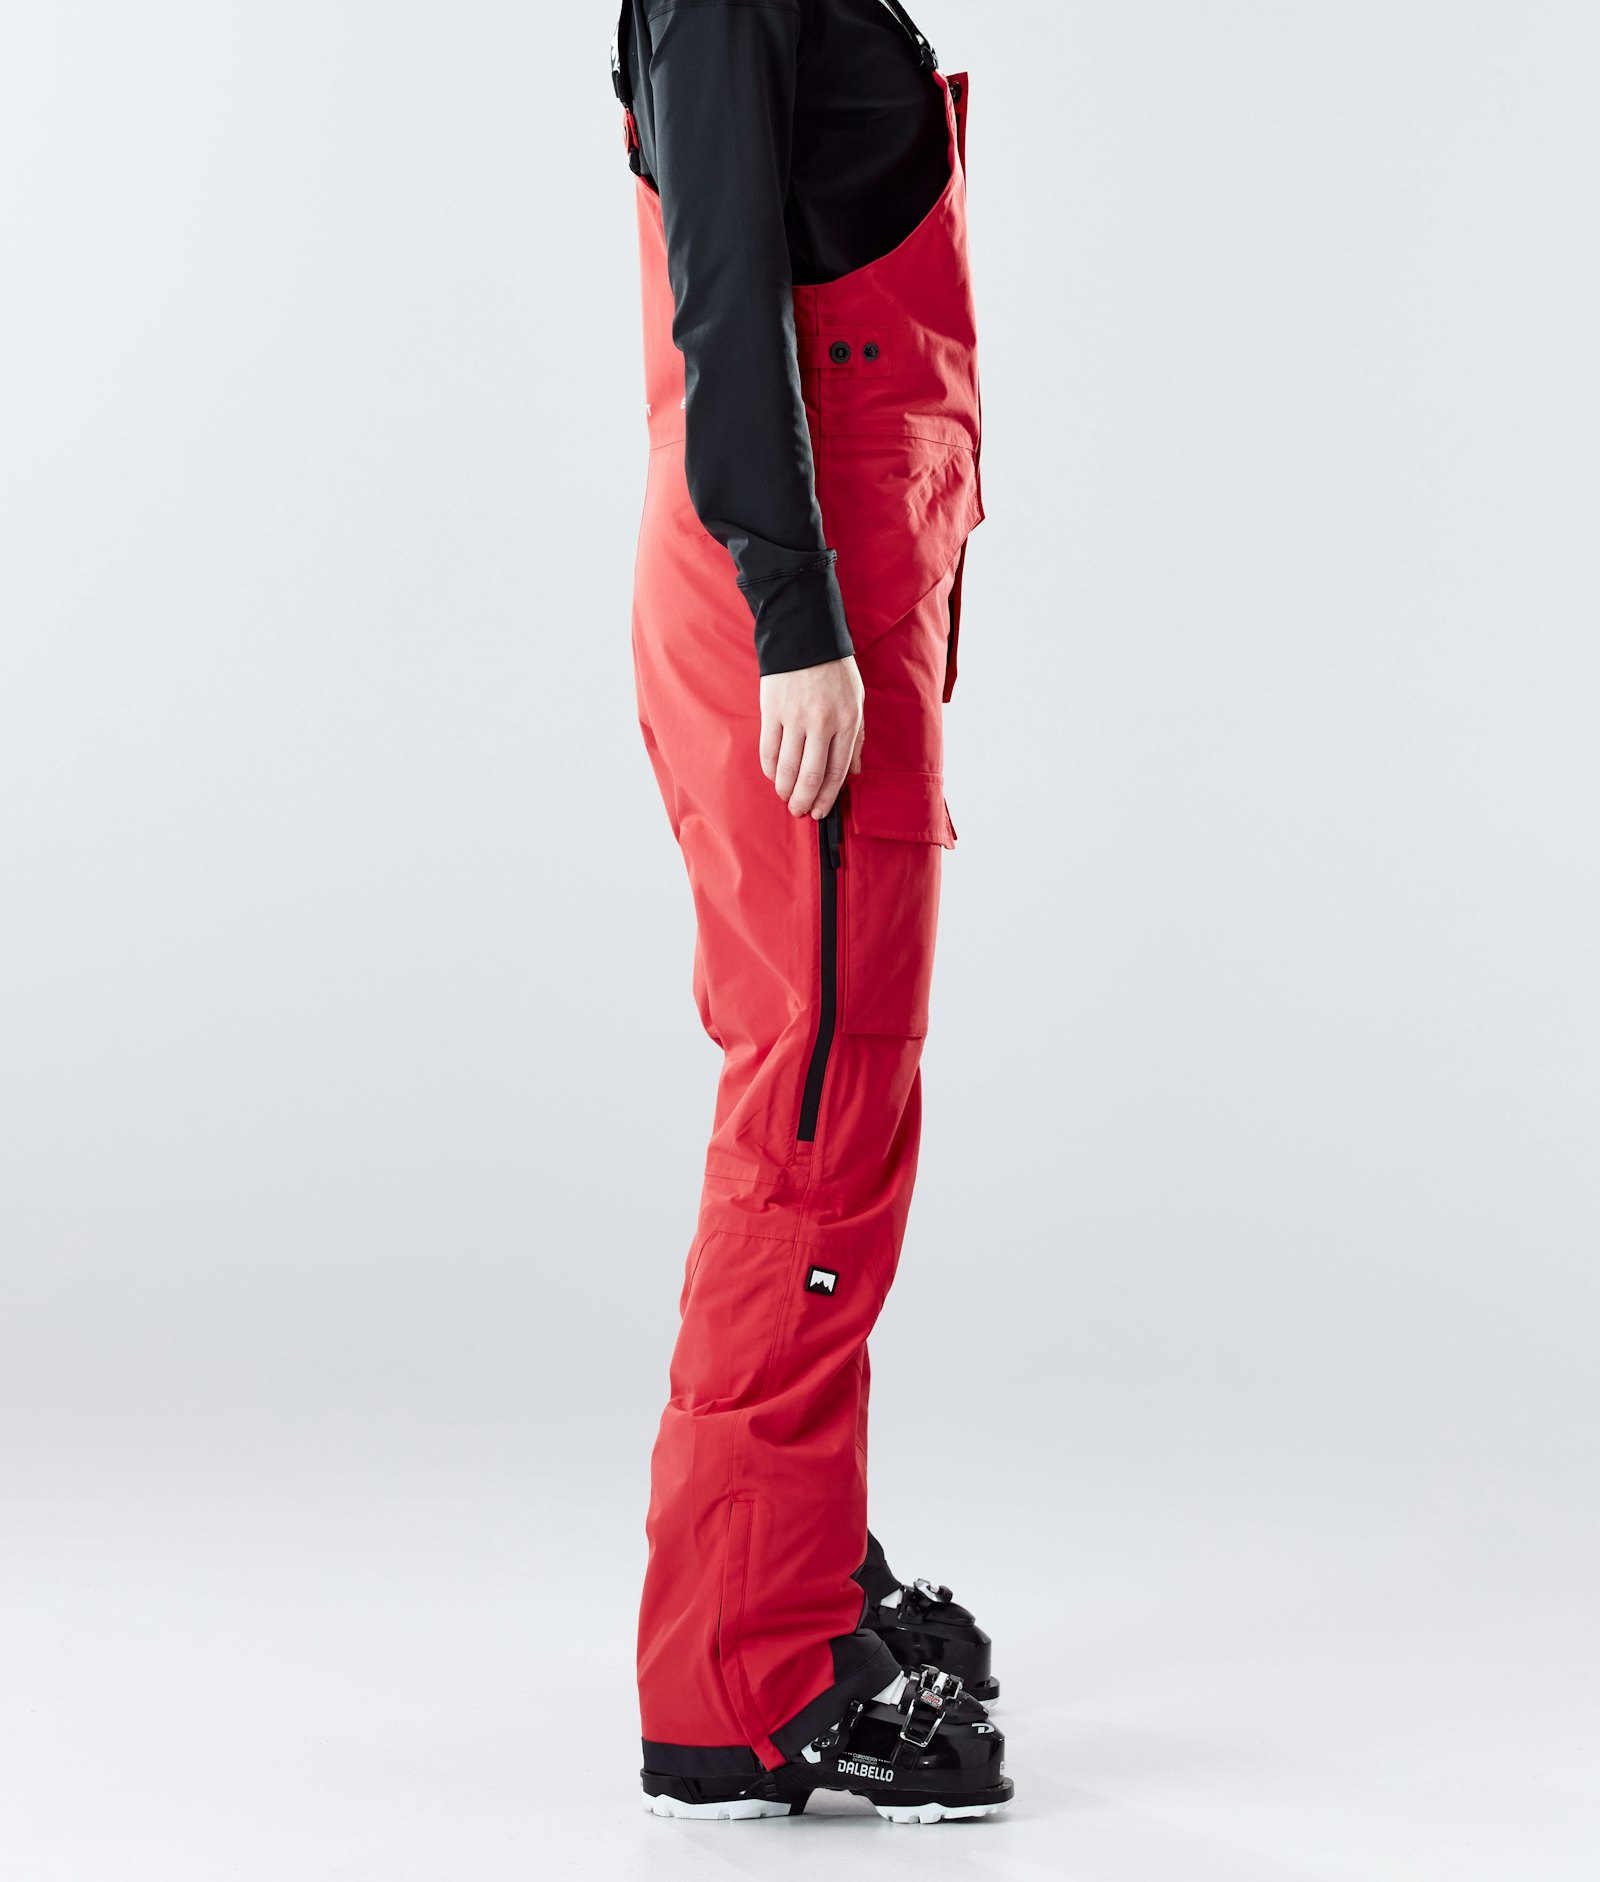 Montec Fawk W 2020 Ski Pants Women Red